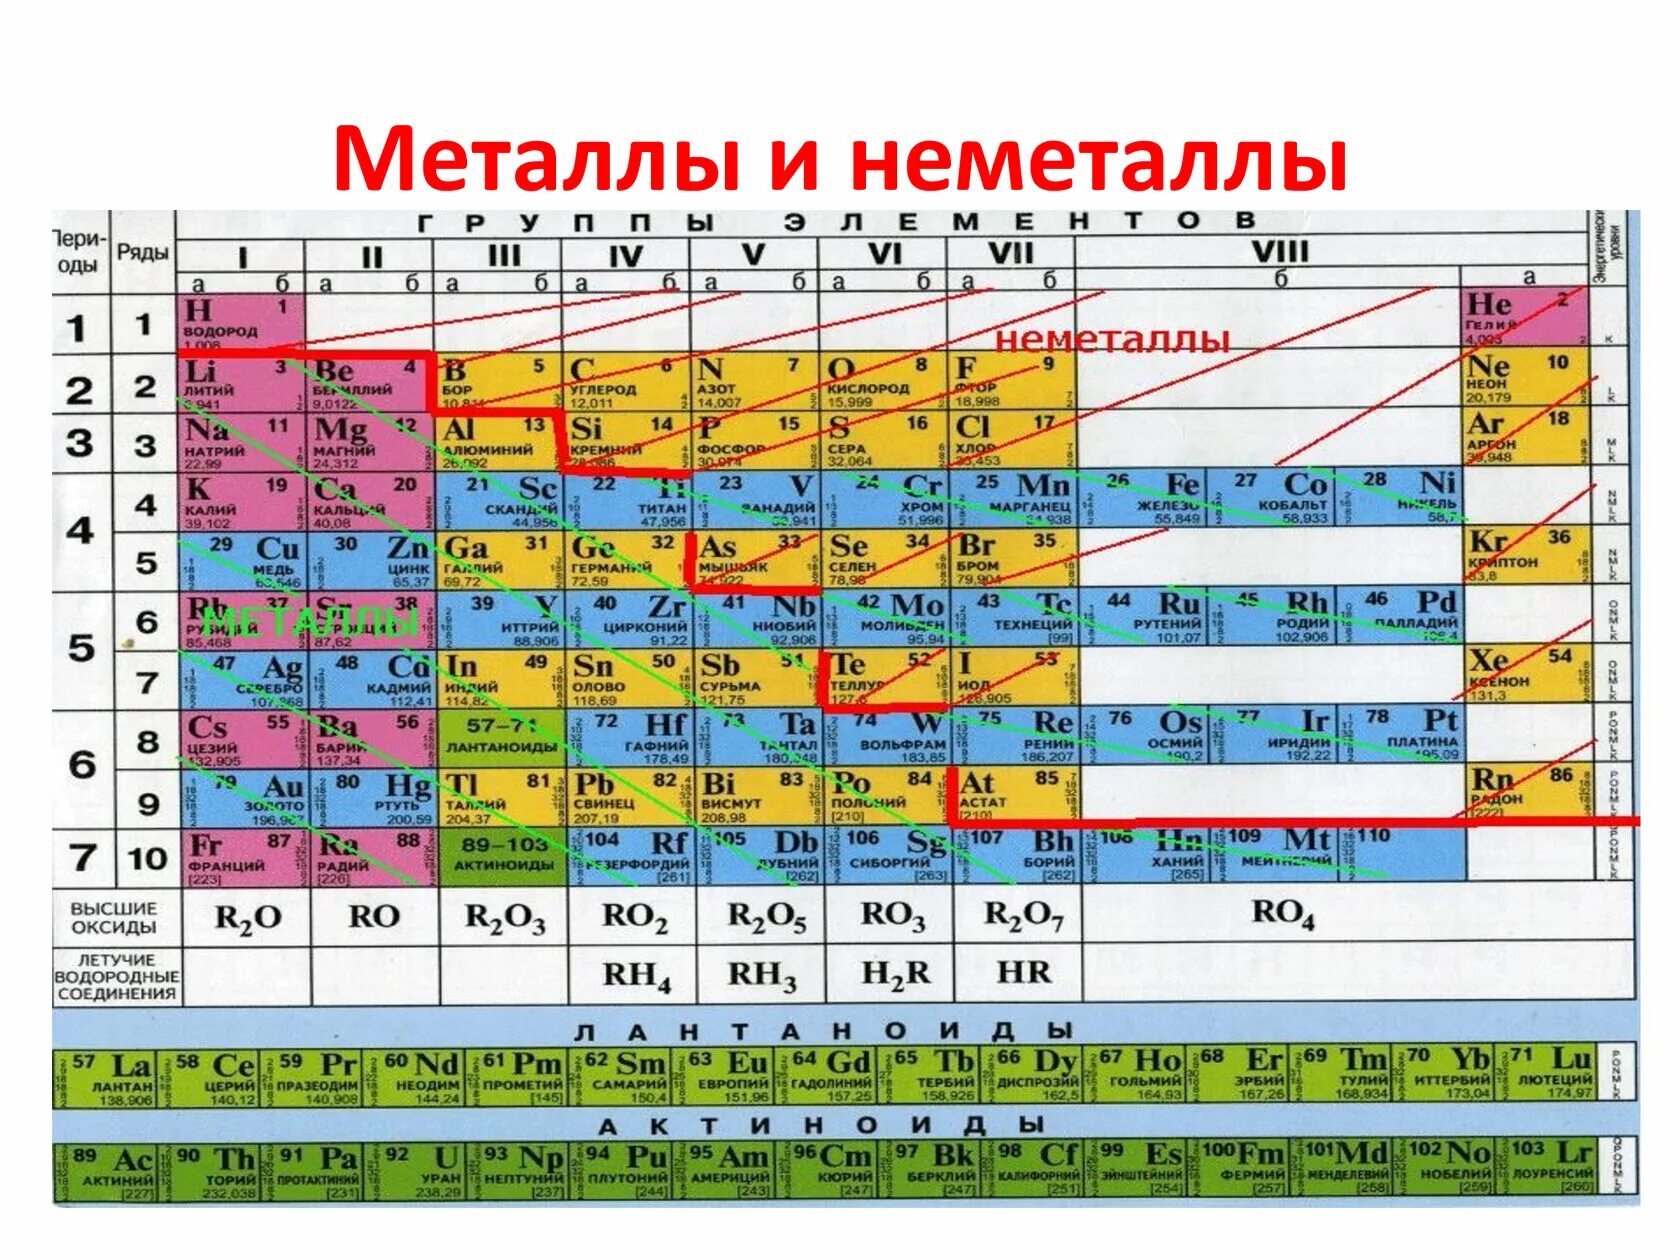 Атомная масса марганца. Таблица Менделеева металлы и неметаллы. Химия металлы и неметаллы таблица. Химические элементы металлы и неметаллы. Таблица элементов Менделеева металлы и неметаллы.